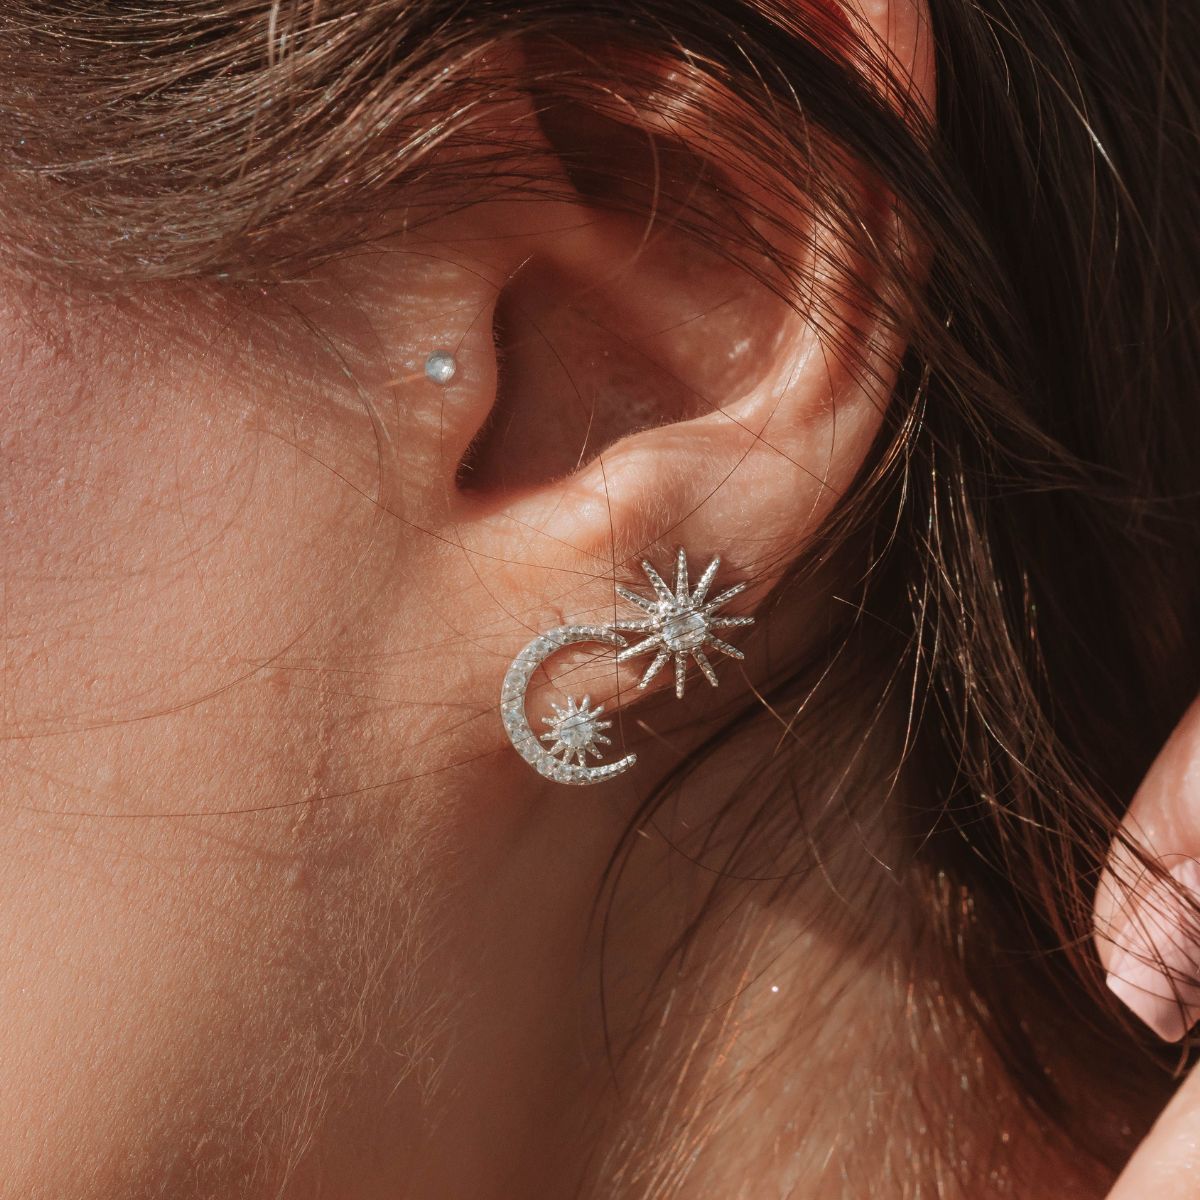 A girl wearing celestial themed silver earrings